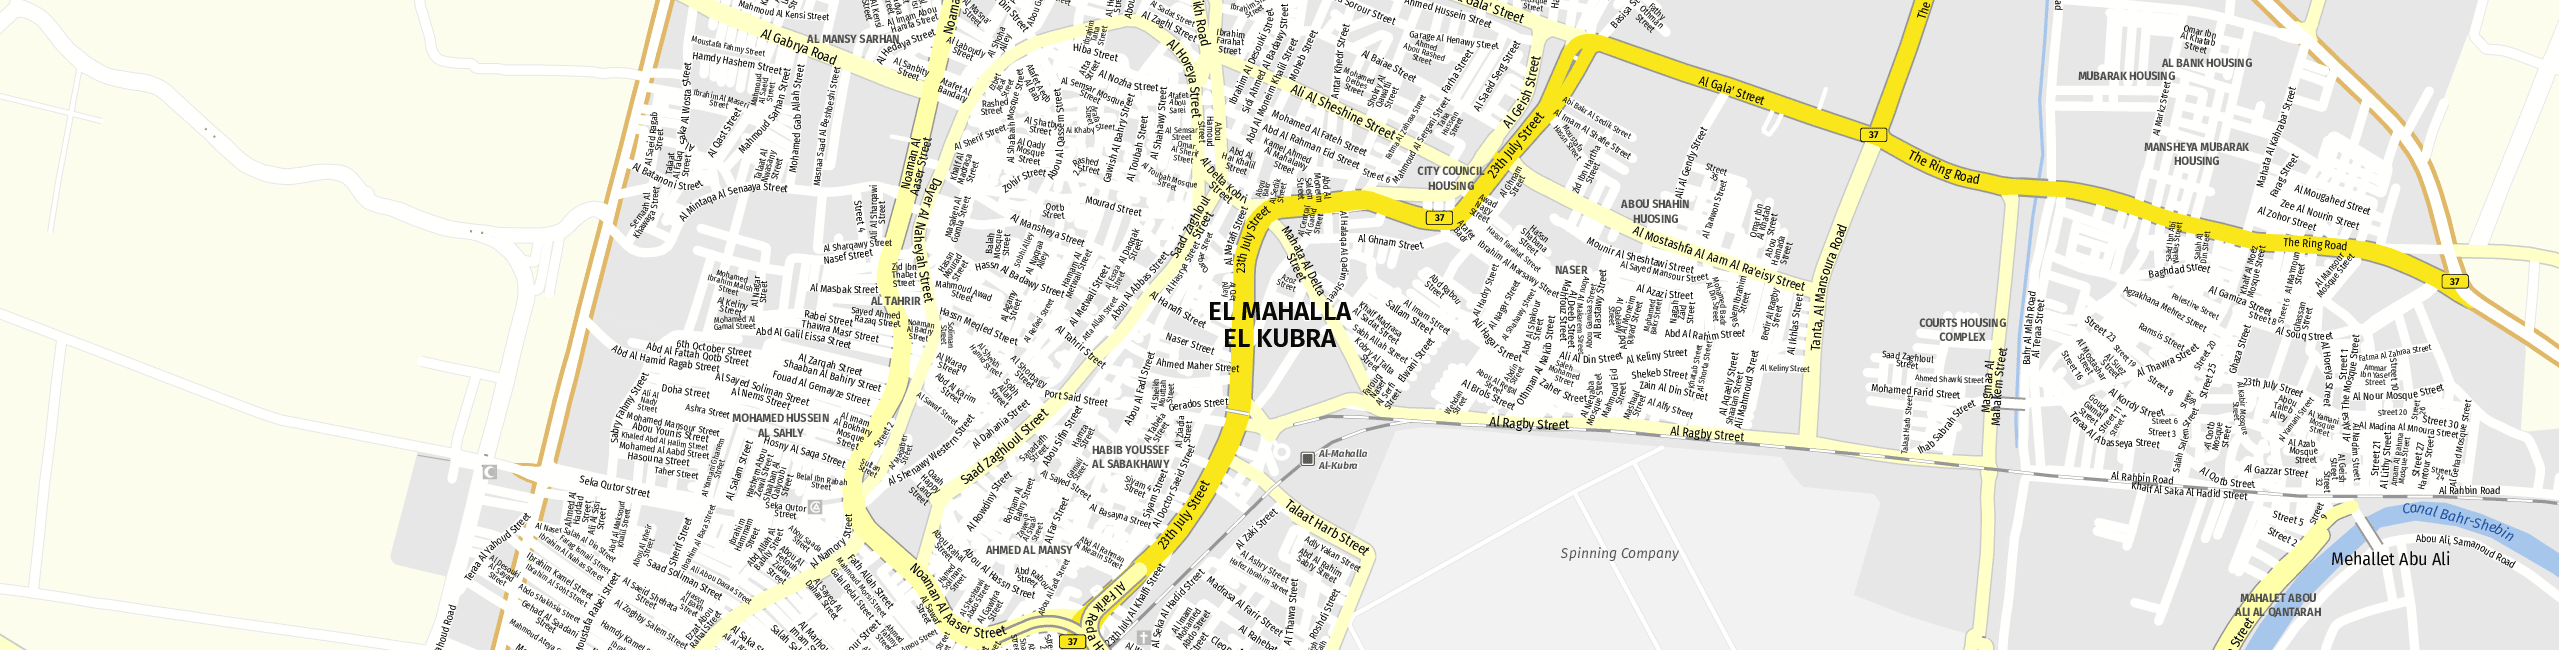 Stadtplan El Mahalla El Kubra zum Downloaden.